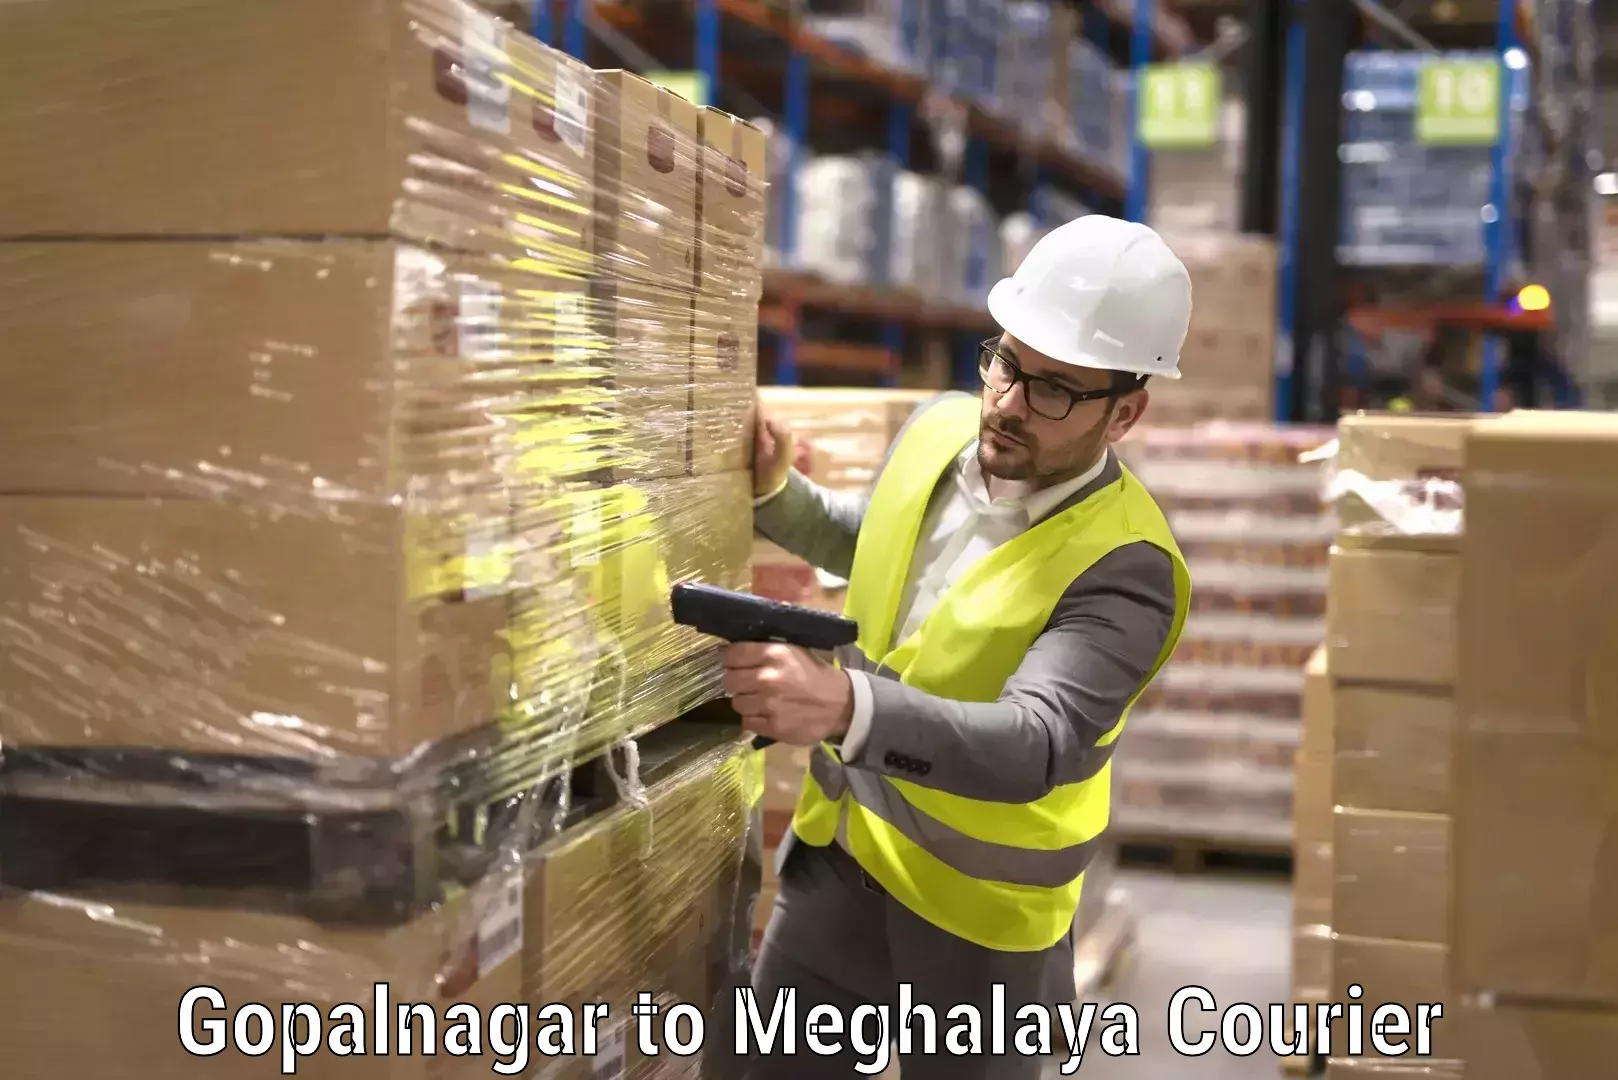 Quality relocation assistance Gopalnagar to Meghalaya